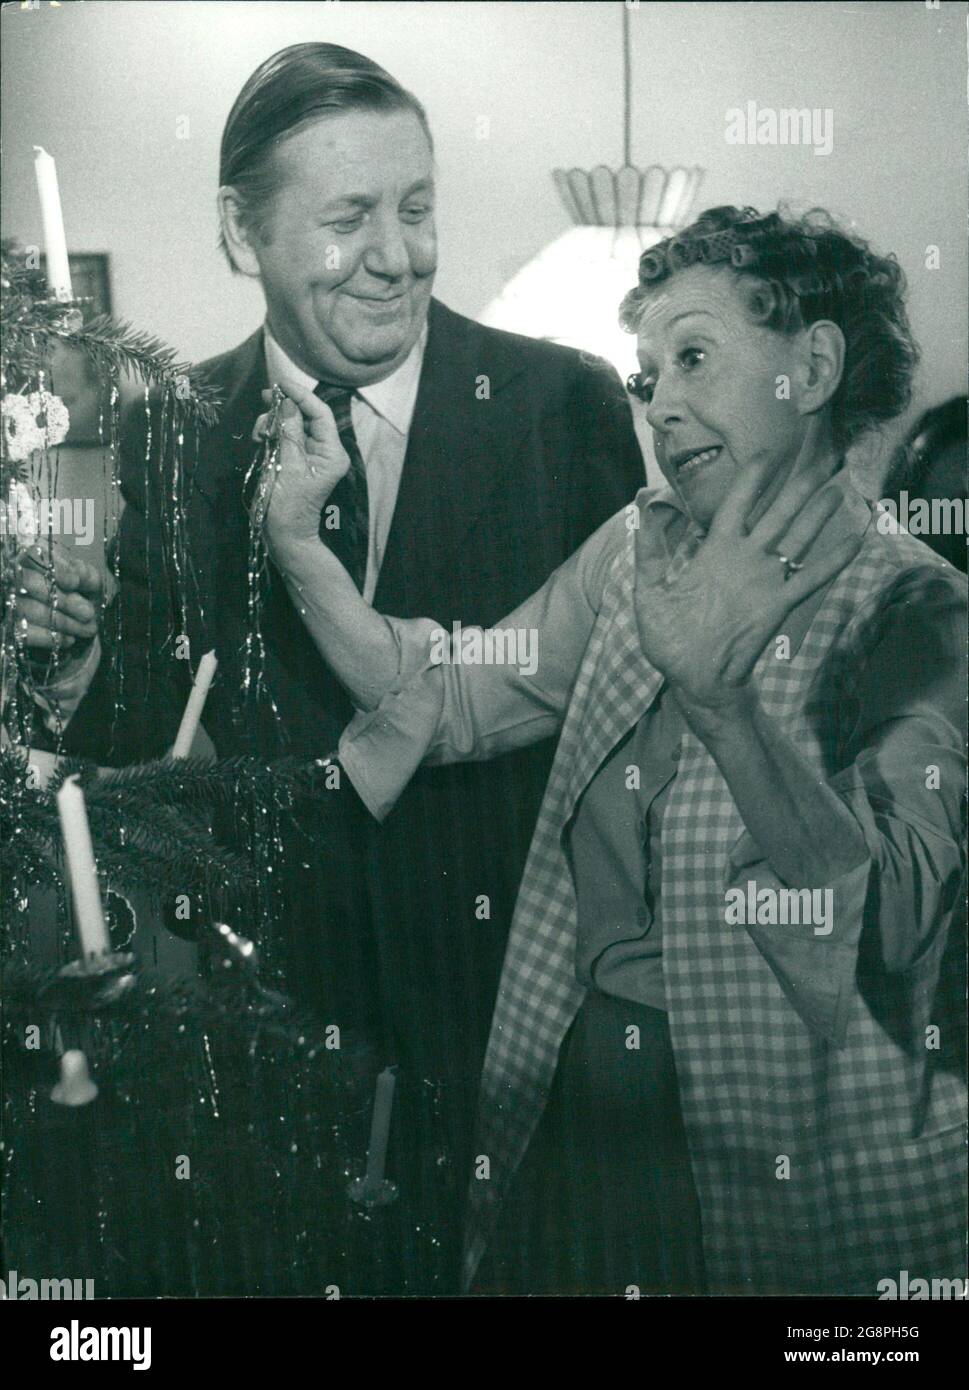 Herbert richtet mit seiner Mama die häusliche Weihnachtsdekoration. (Herbert Mensching, Inge Meysel) Stock Photo